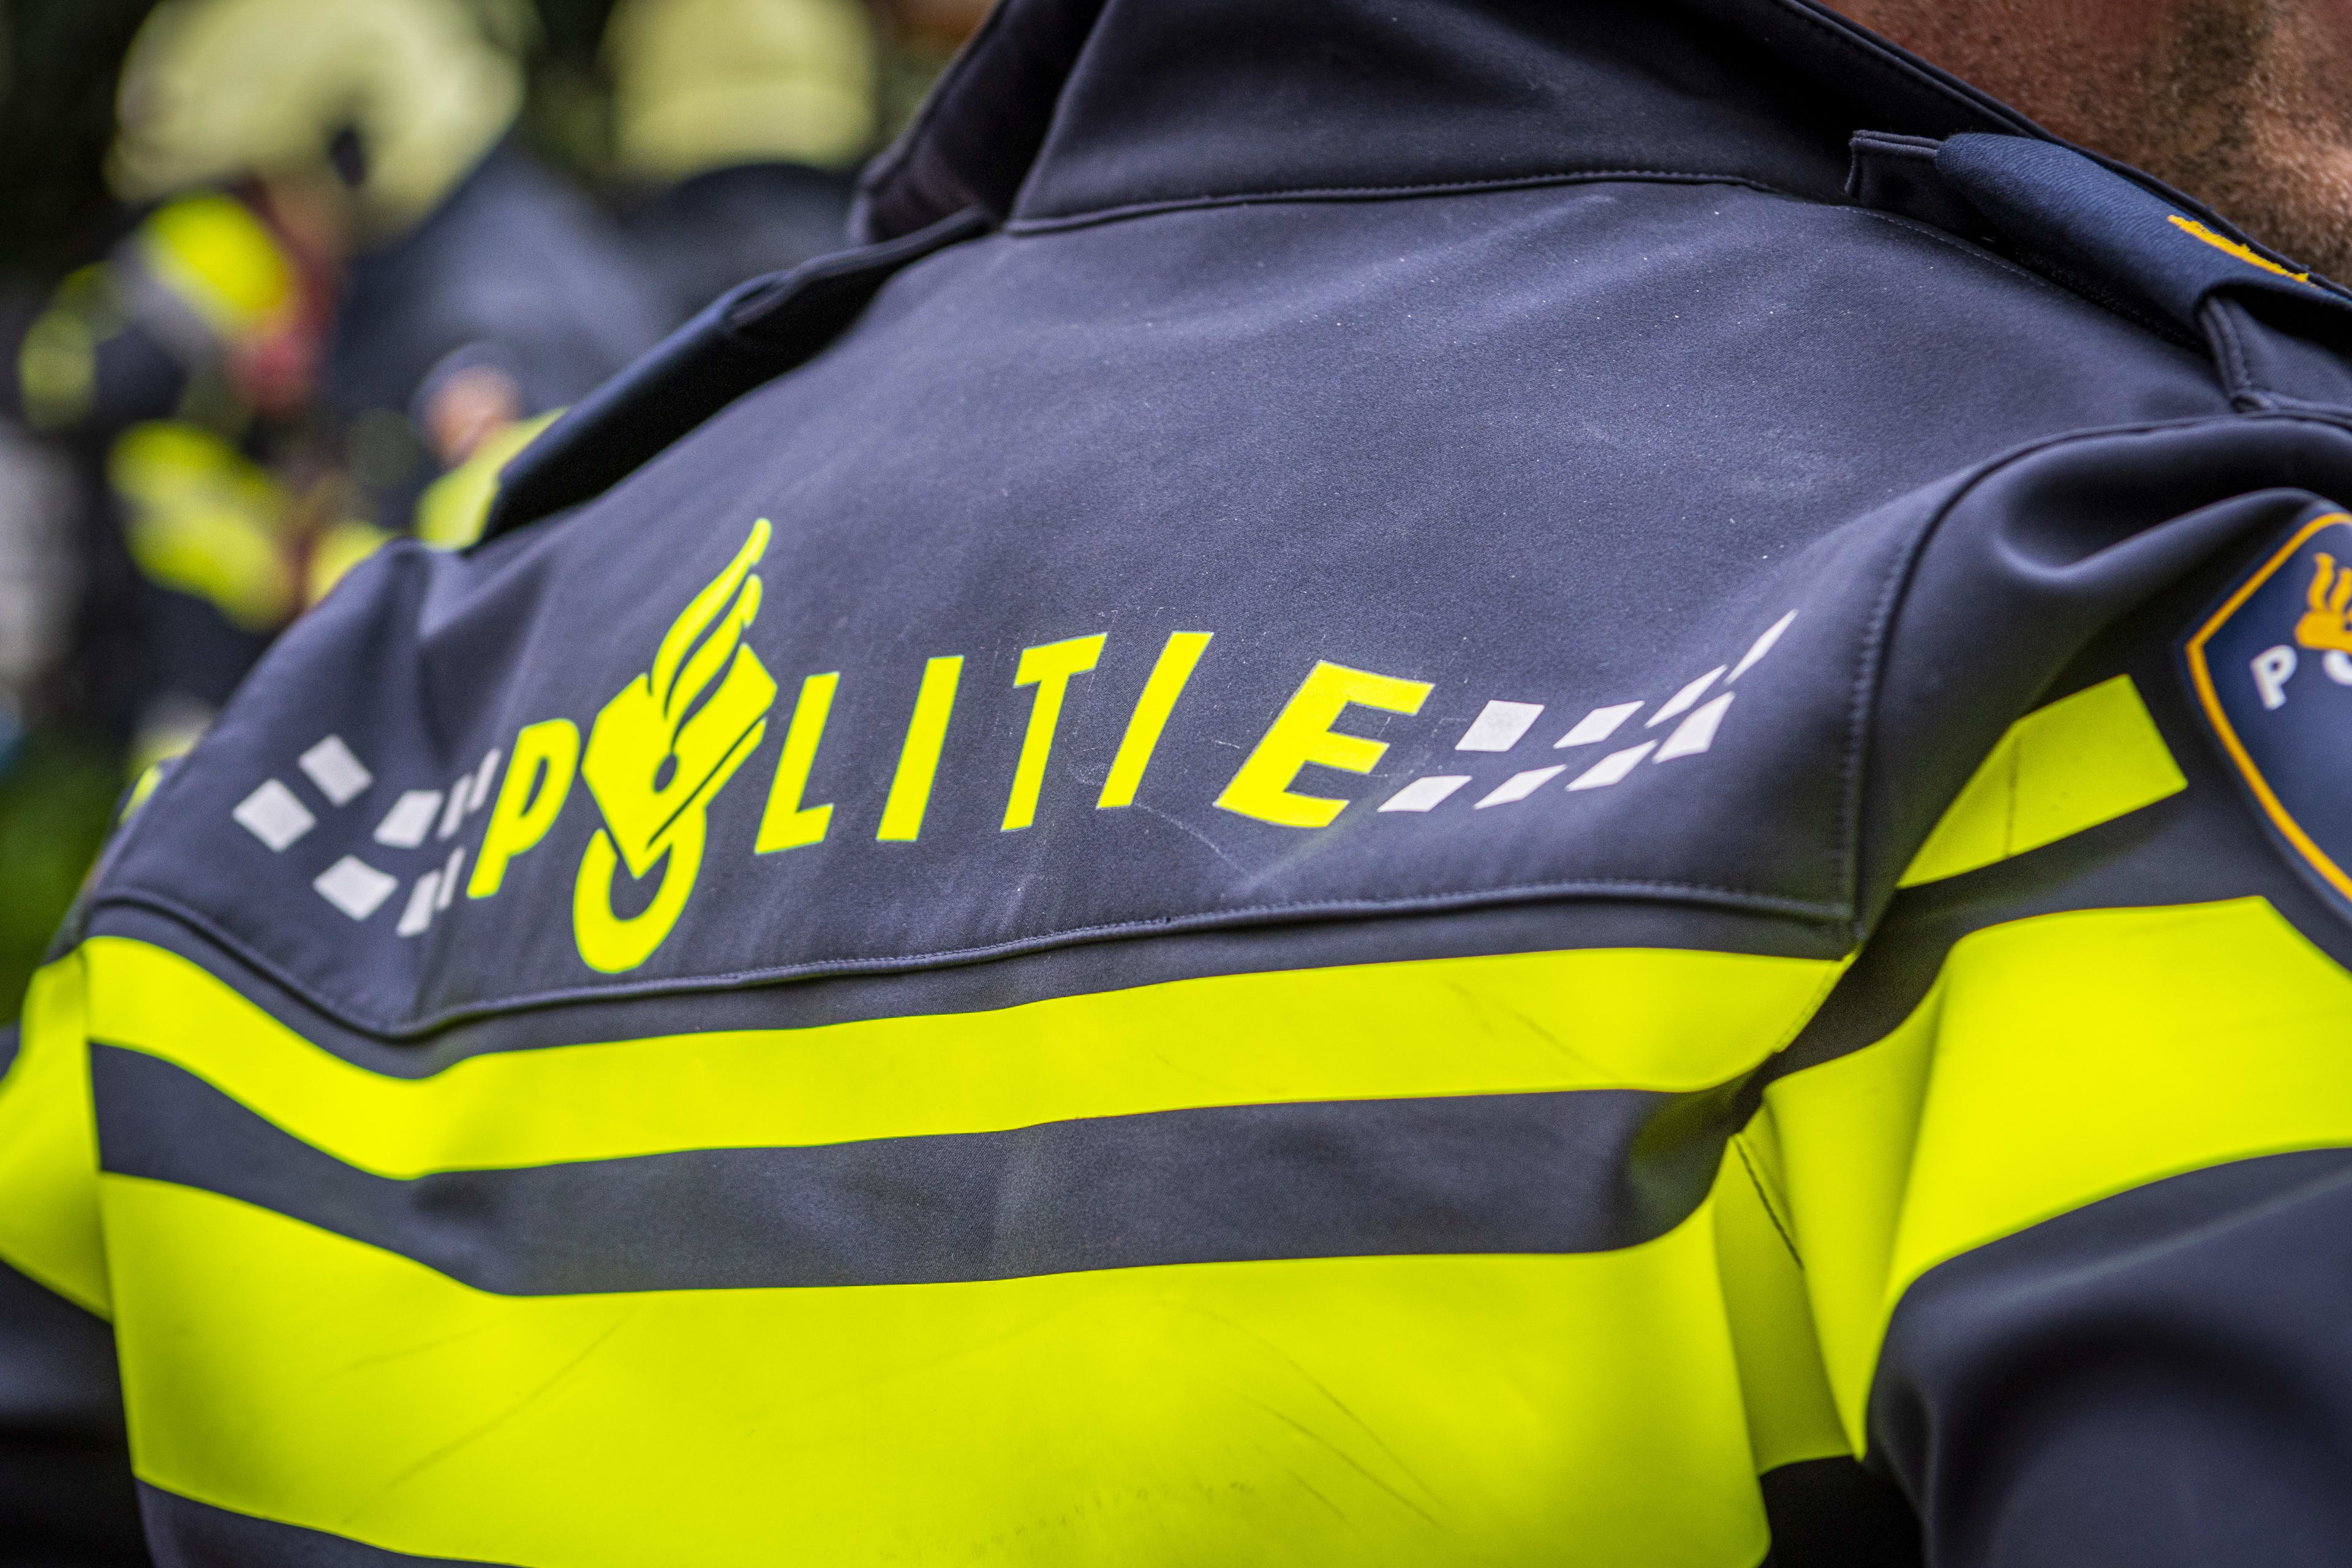 Mannen mishandelen agent in centrum Den Haag: 'Hij kreeg geen adem meer'